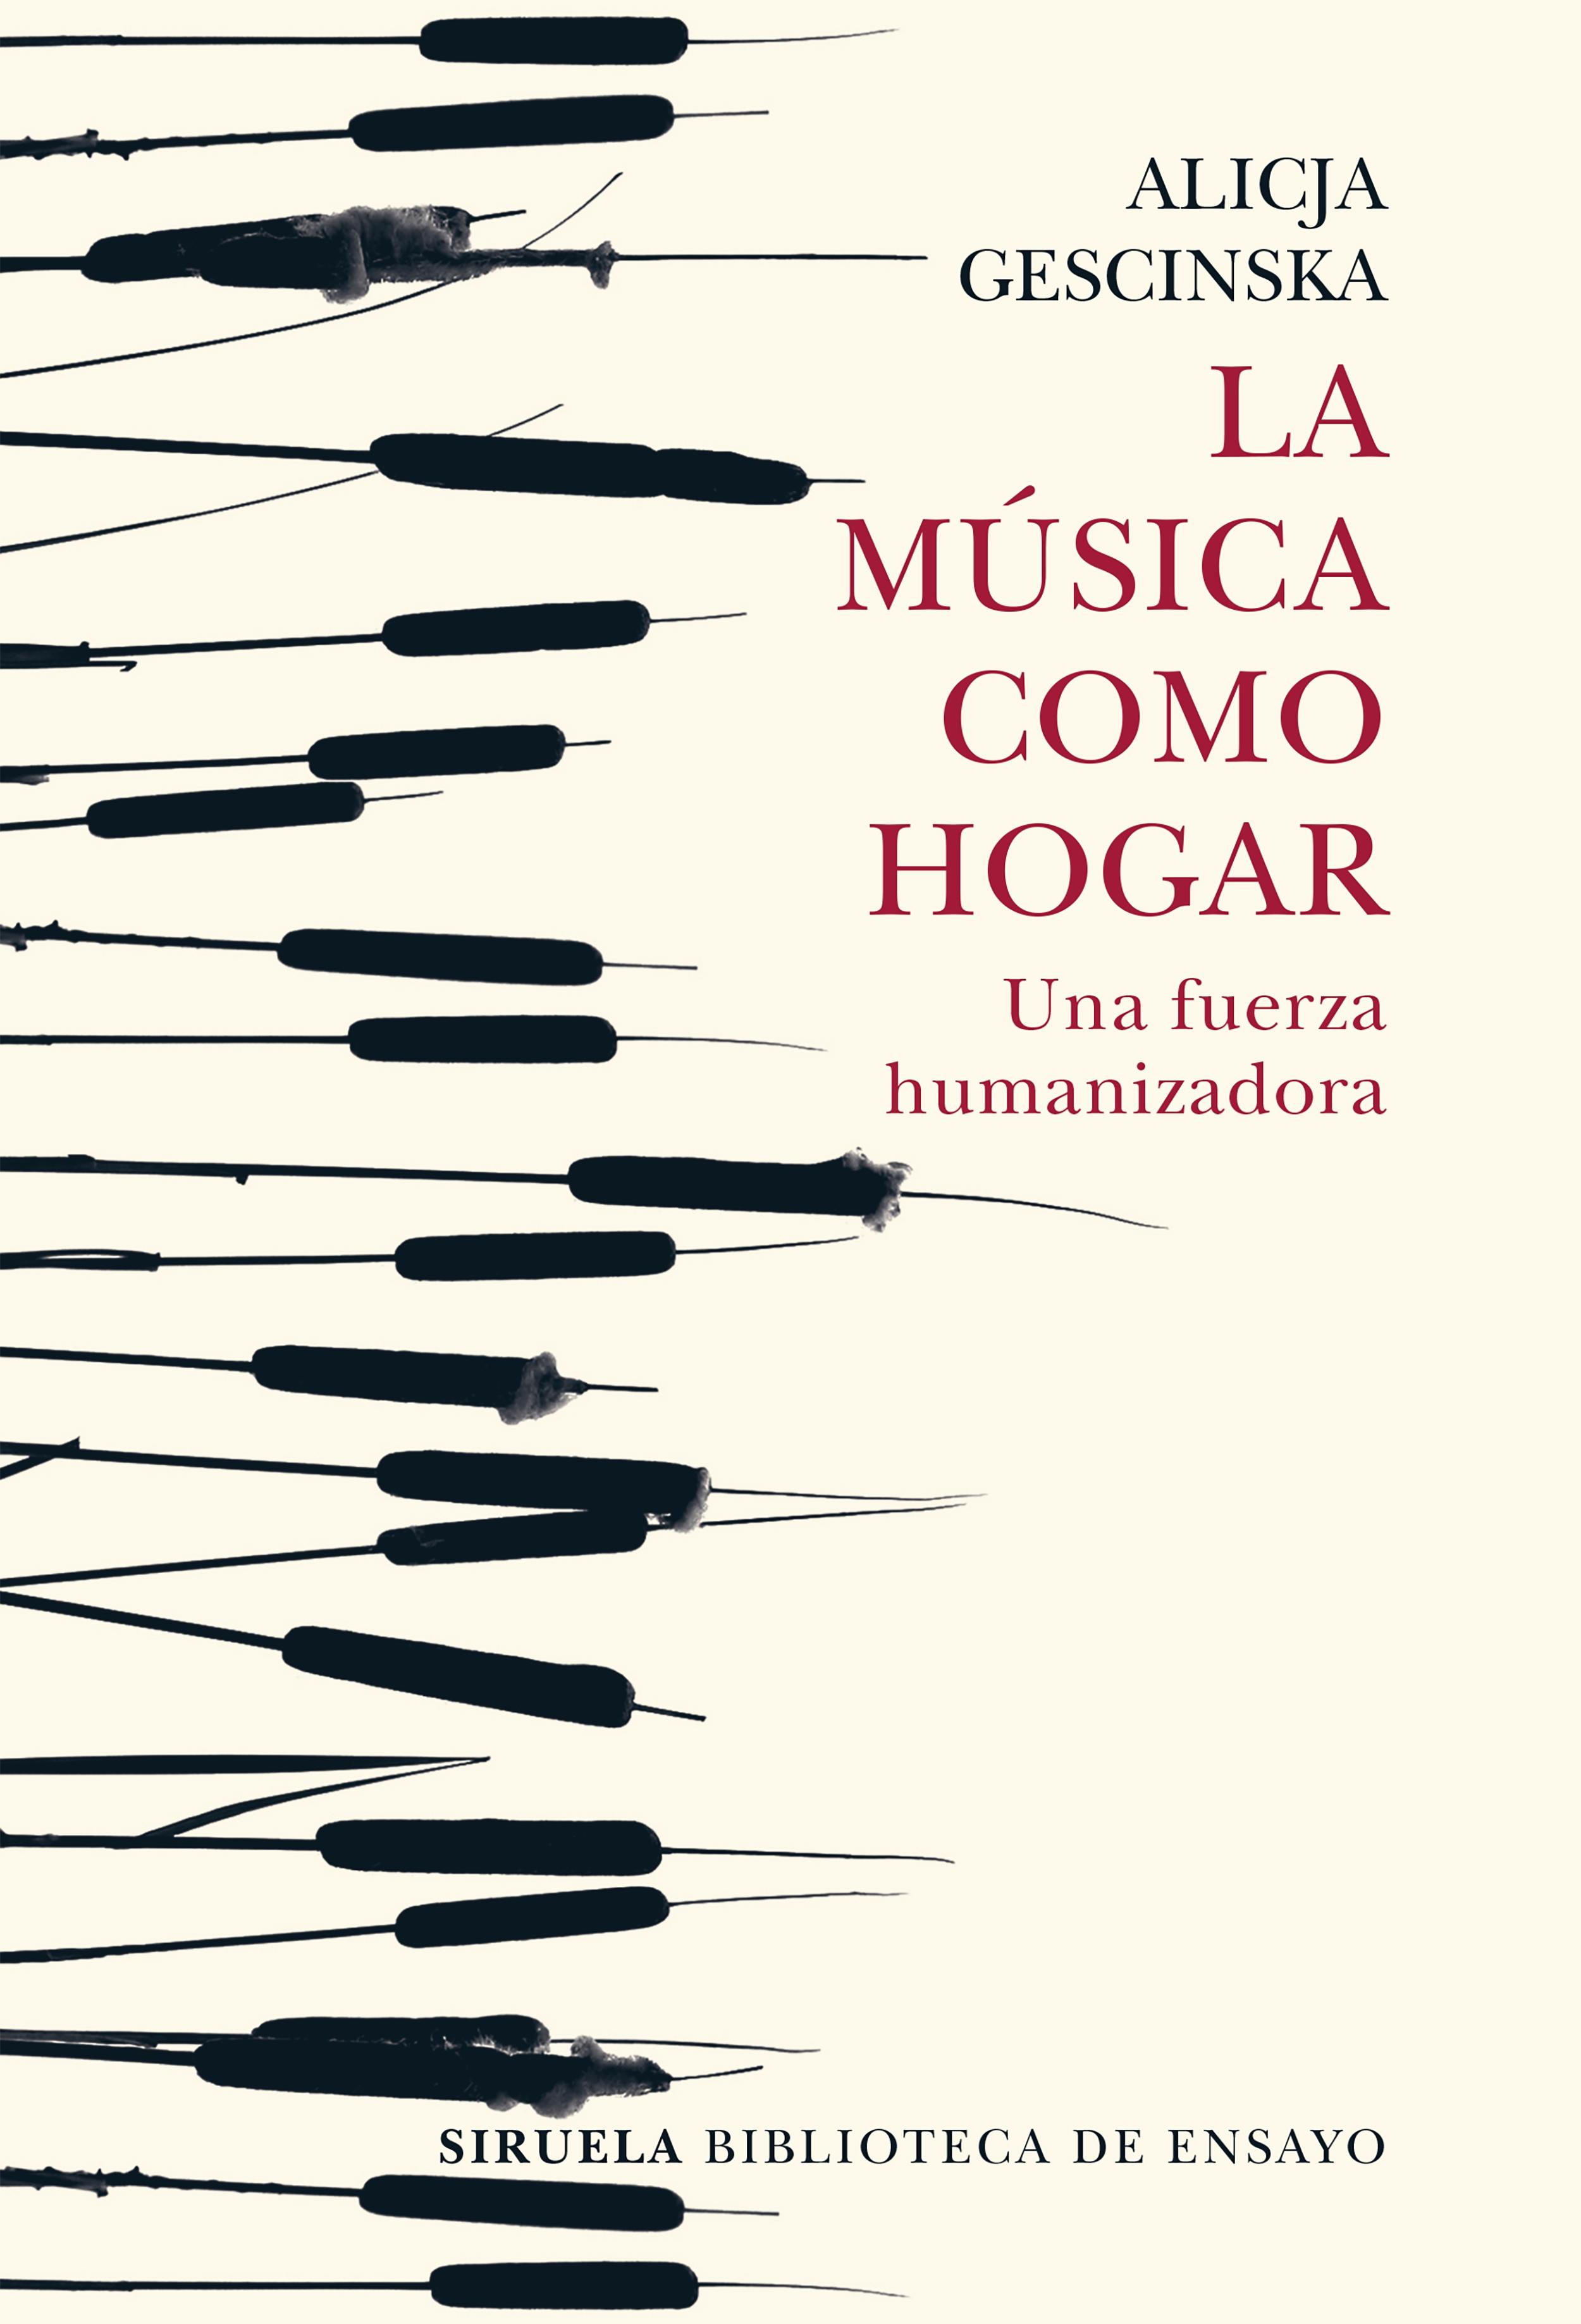 La música como hogar "Una fuerza humanizadora". 